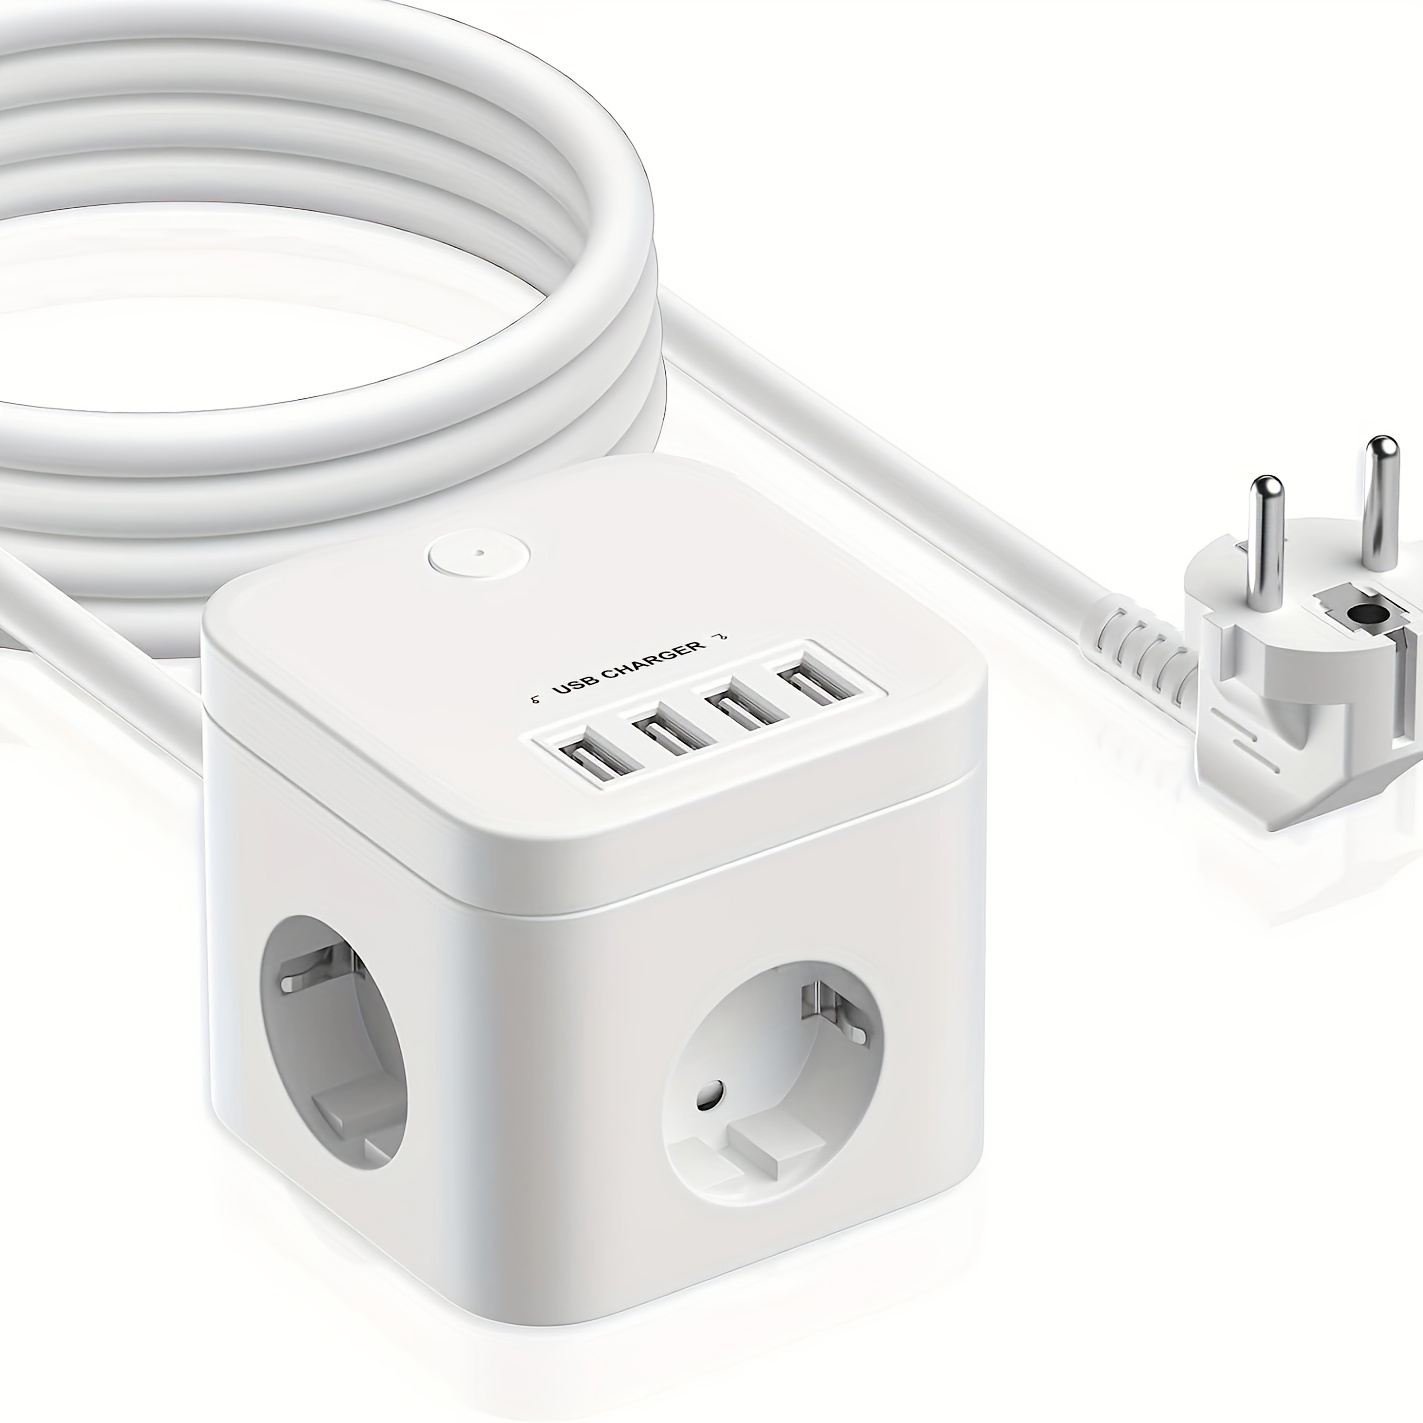 TESSAN Prise USB Multiple avec Interrupteur Bloc Multiprise Electrique pour  Bureau et Maison 2m Gris - Prise, multiprise et accessoires électriques -  Achat & prix